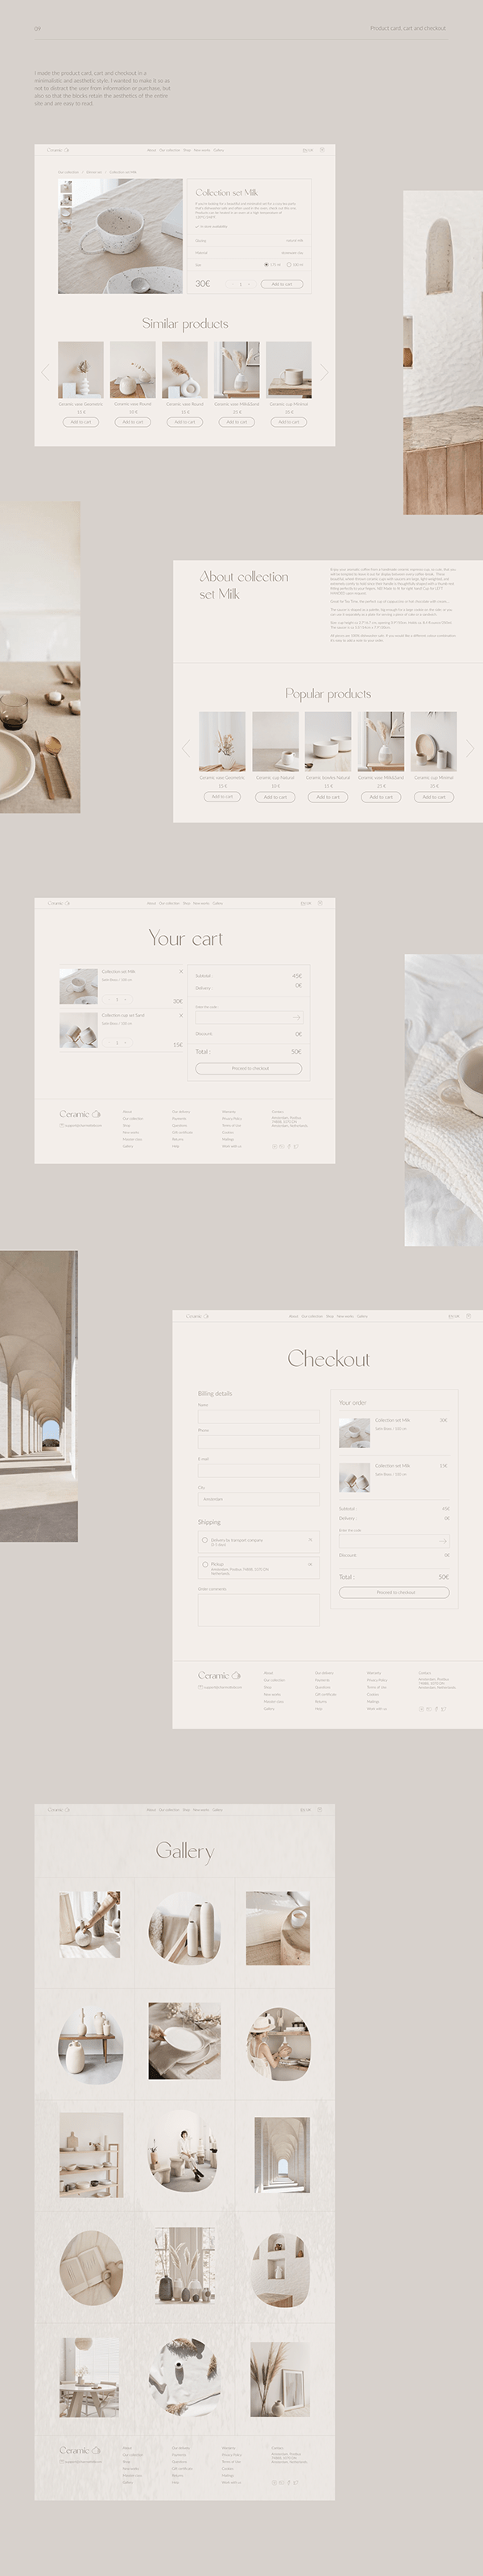 E-COMMERCE/ Ceramic store website design ui/ux design